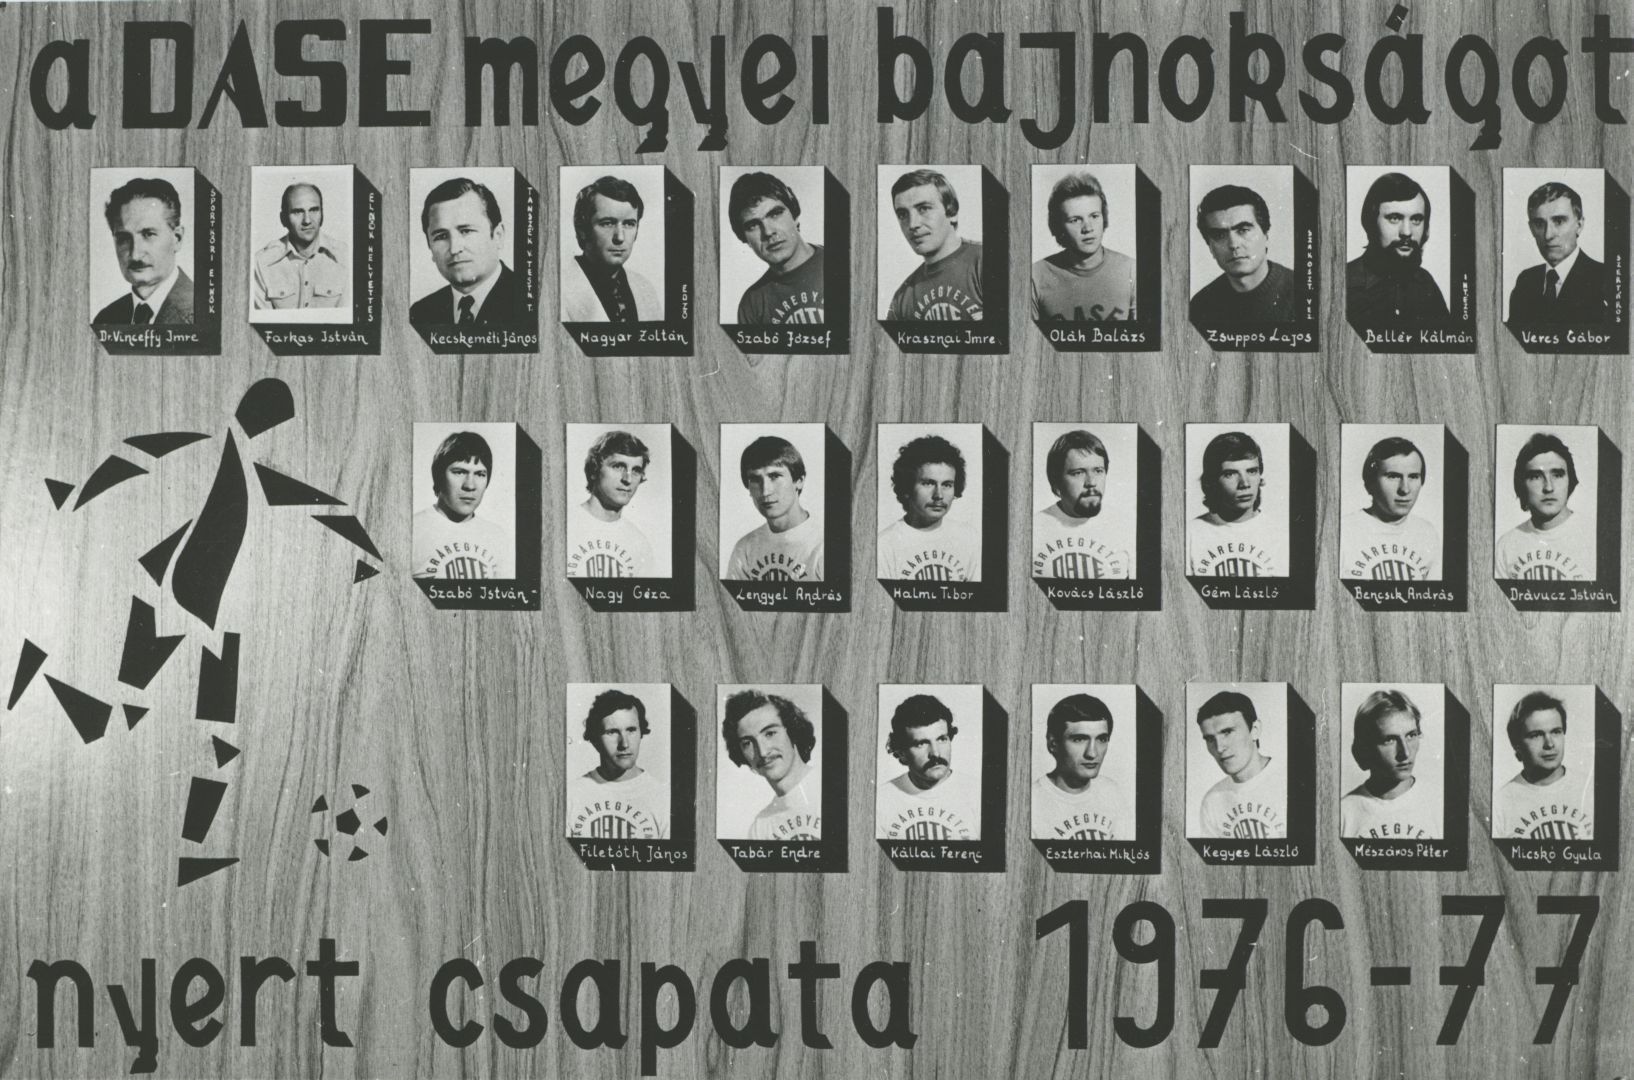 Tablókép a DASE megyei bajnokségot nyert csapatáról 1976-1977